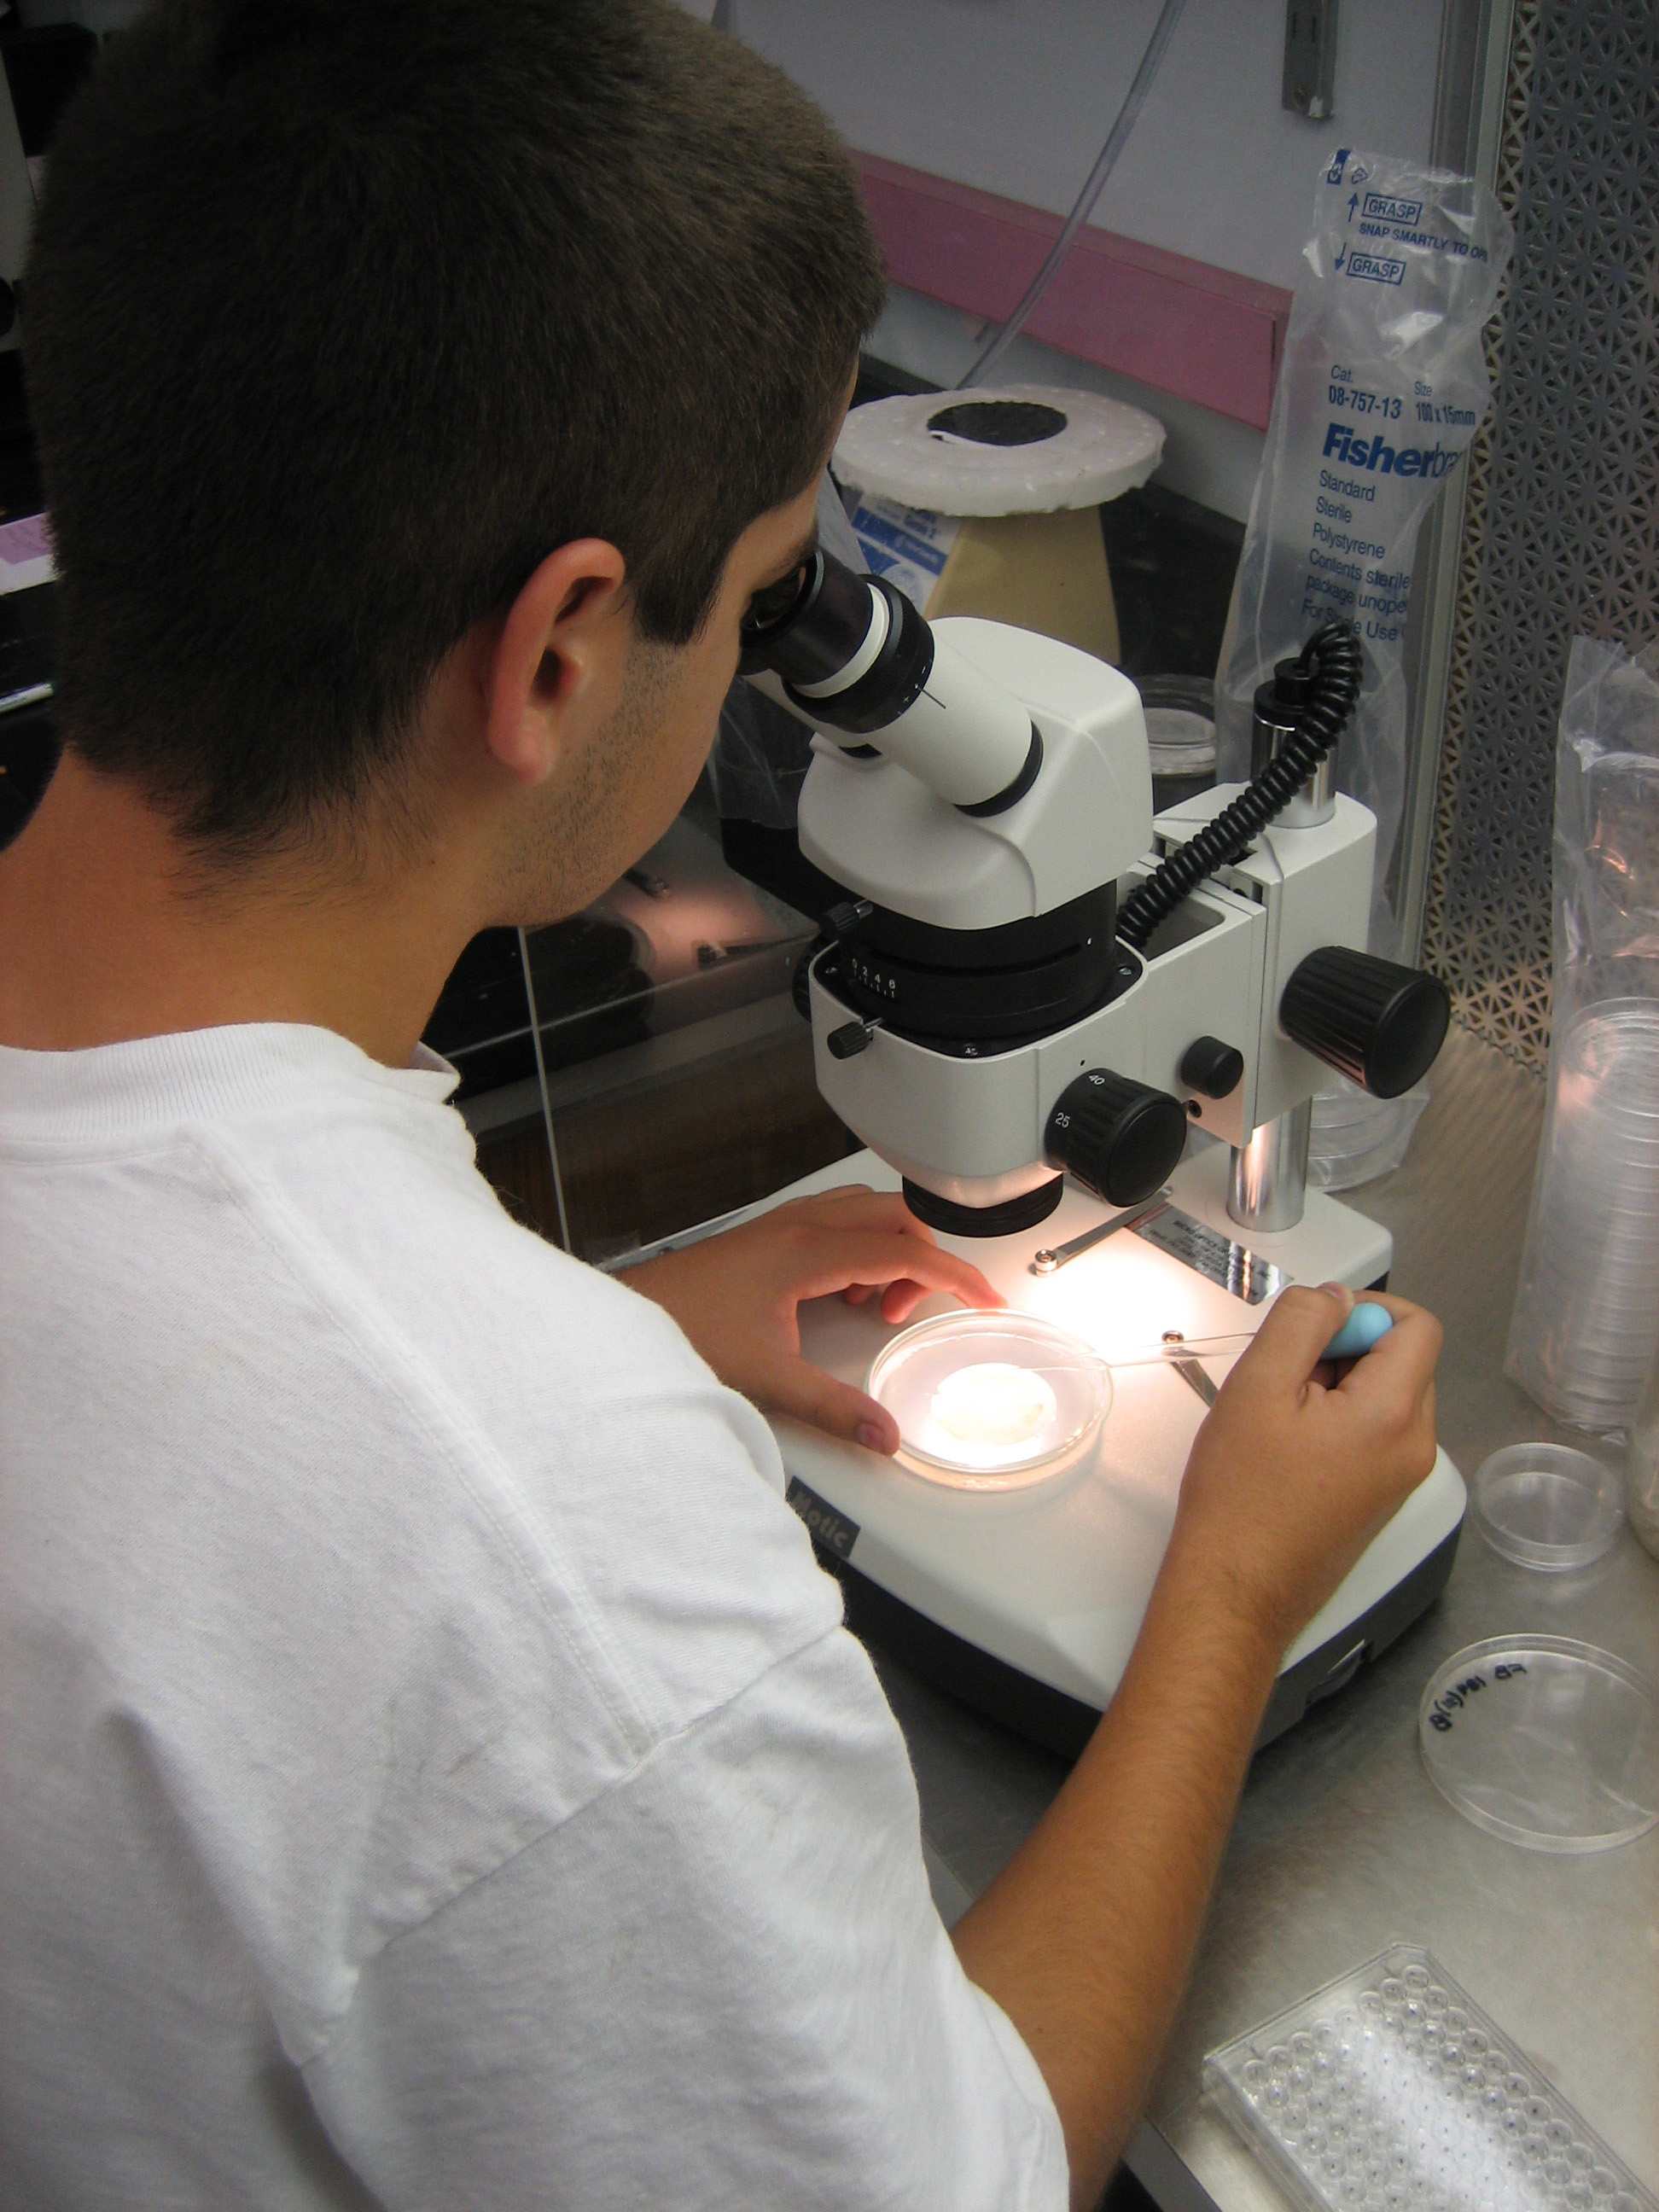 High school intern Oscar working in the lab